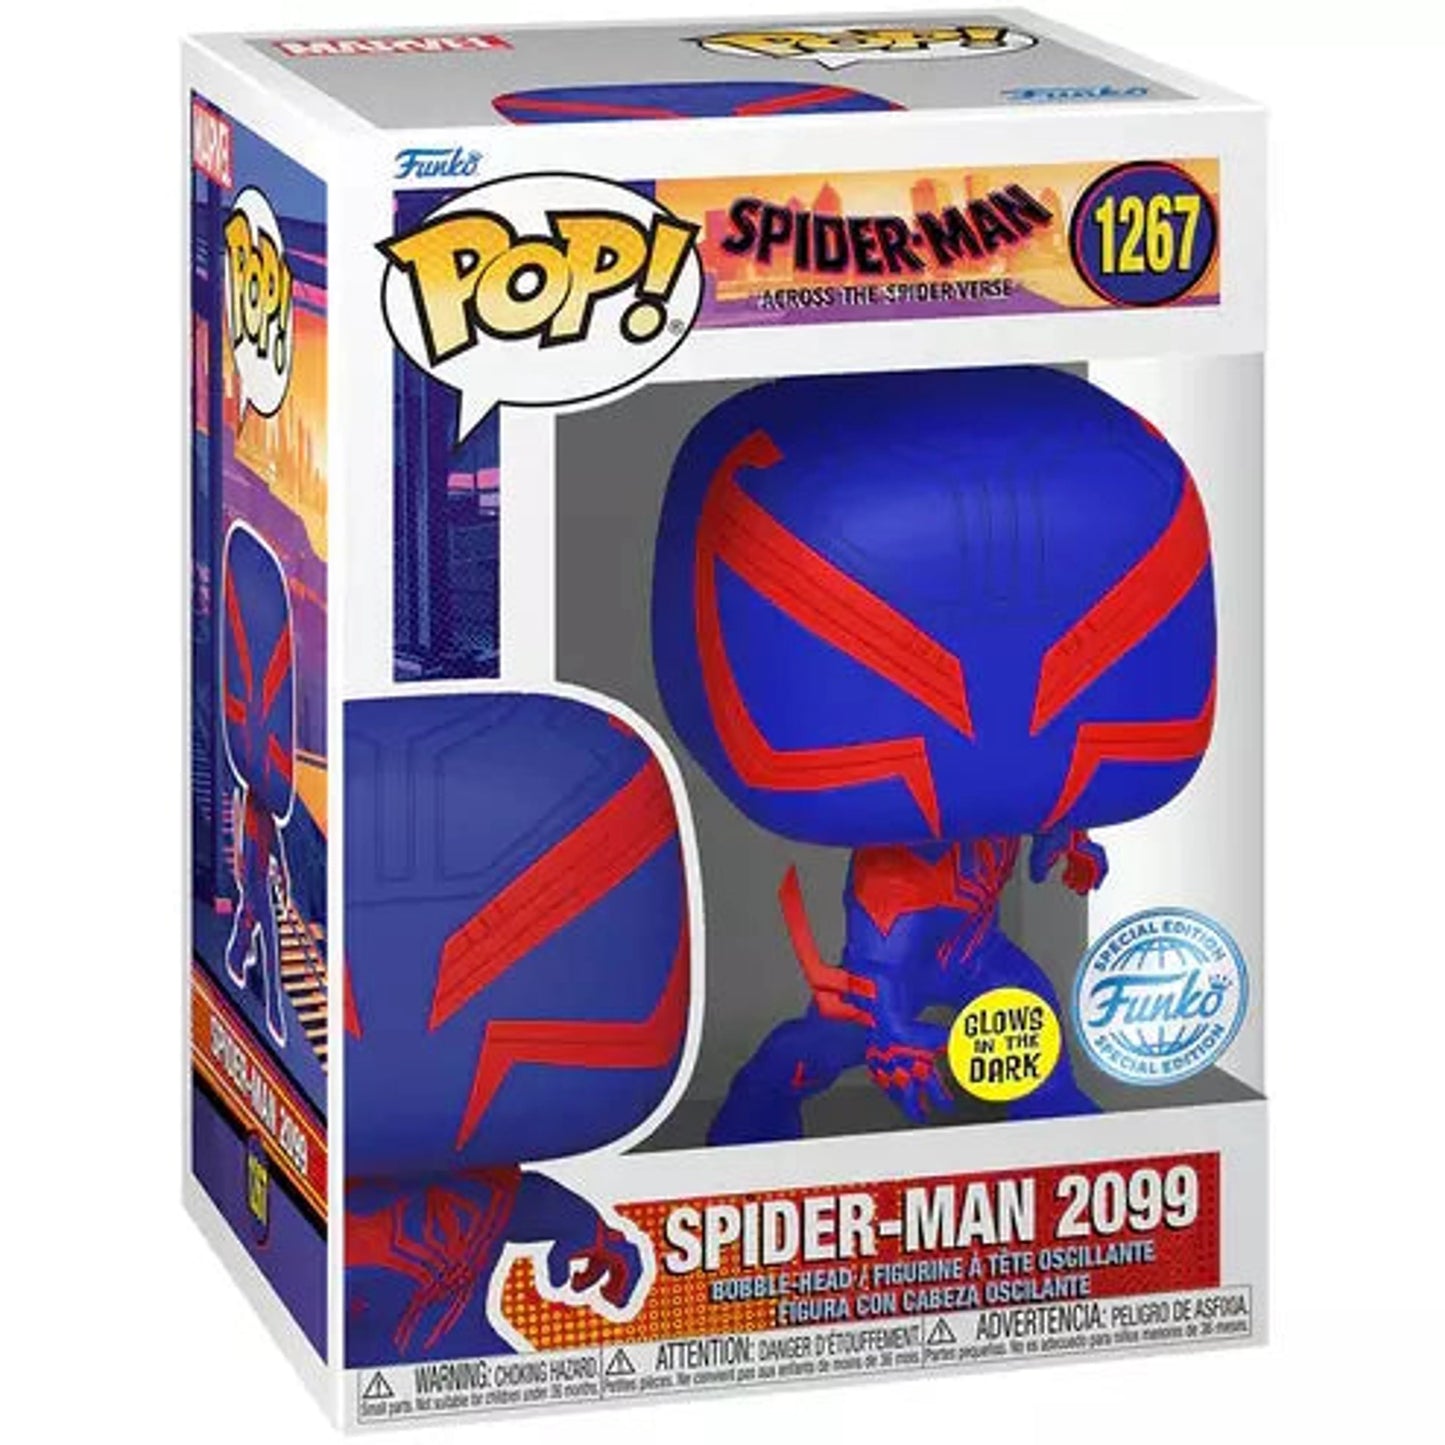 Spider-Man Across The Spider-Verse - Spider-Man 2099 Glow Funko Pop! (DAMAGED BOX)